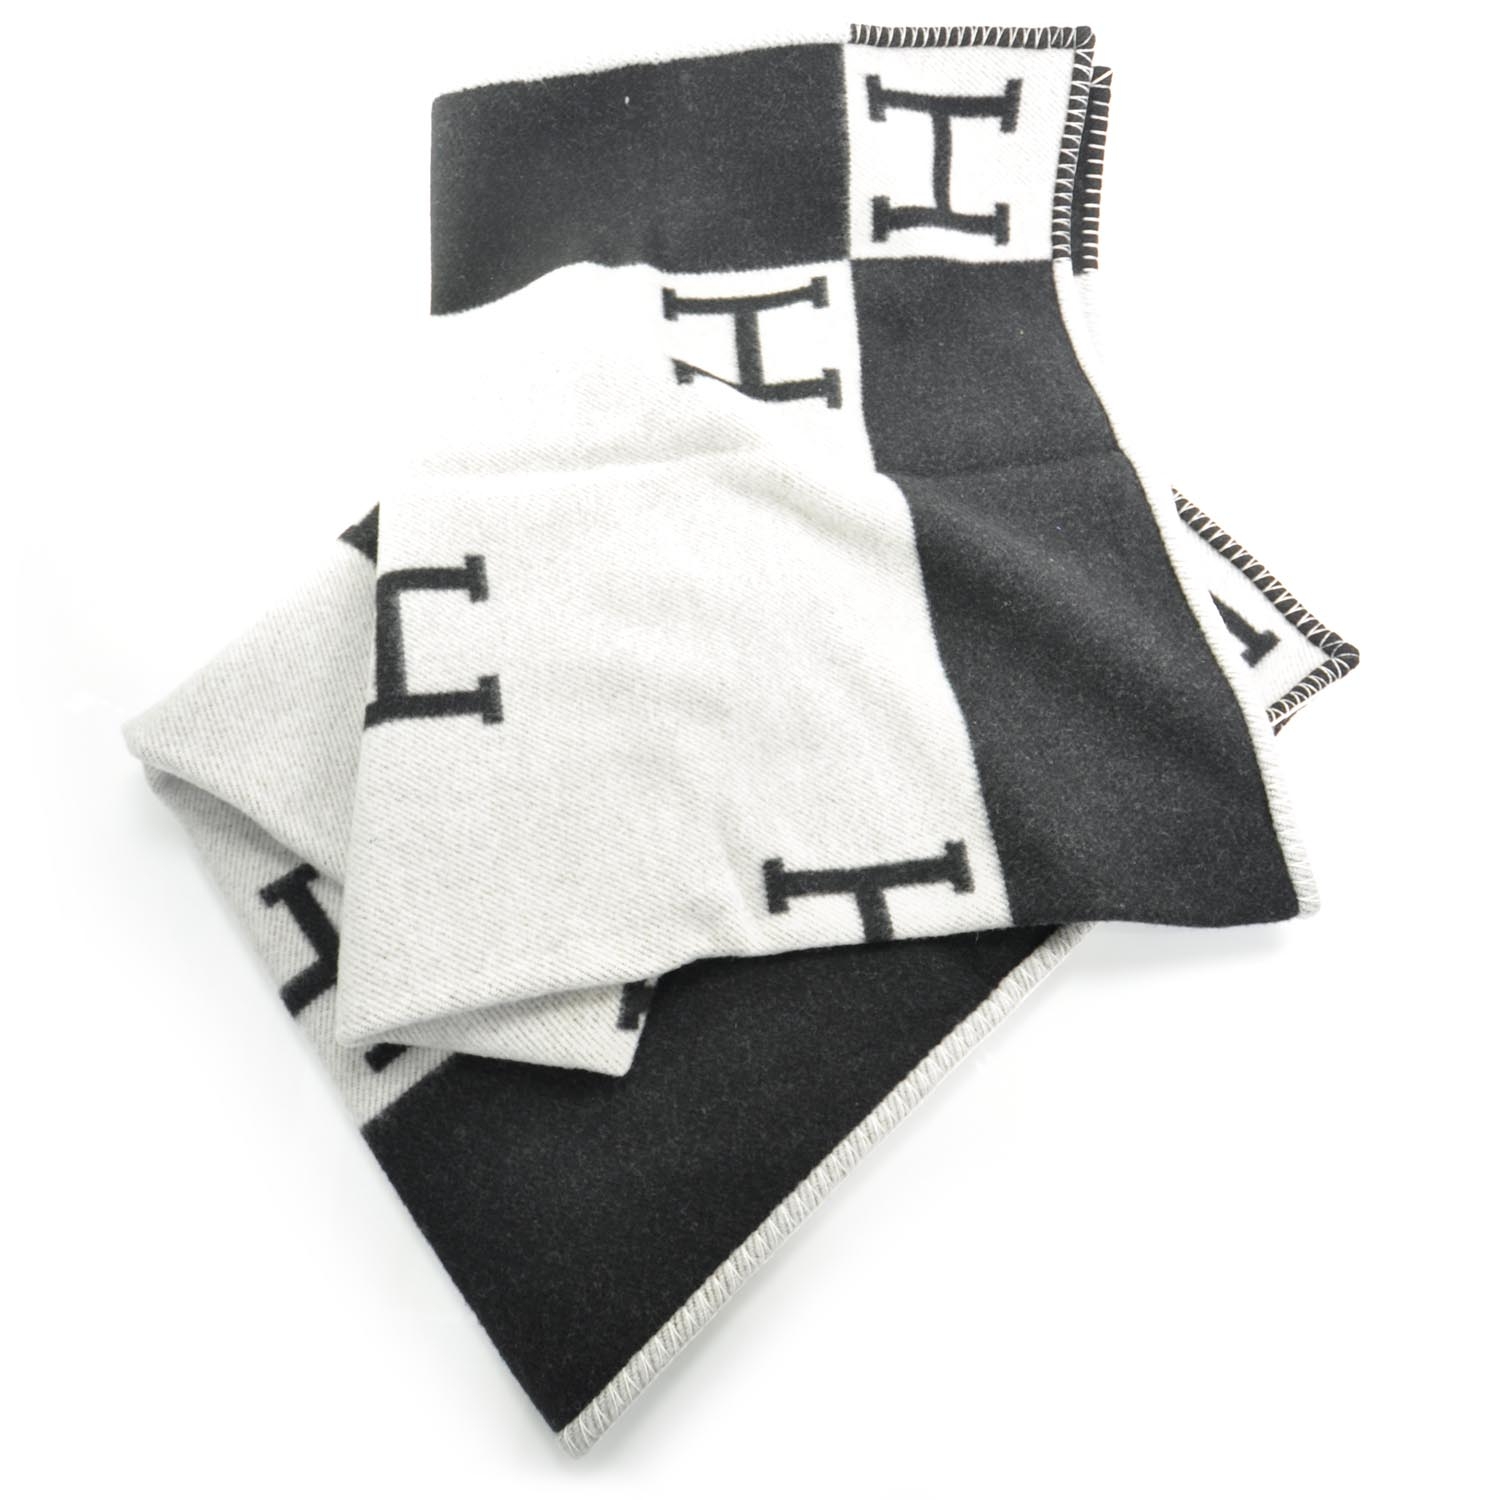 hermes black and white blanket